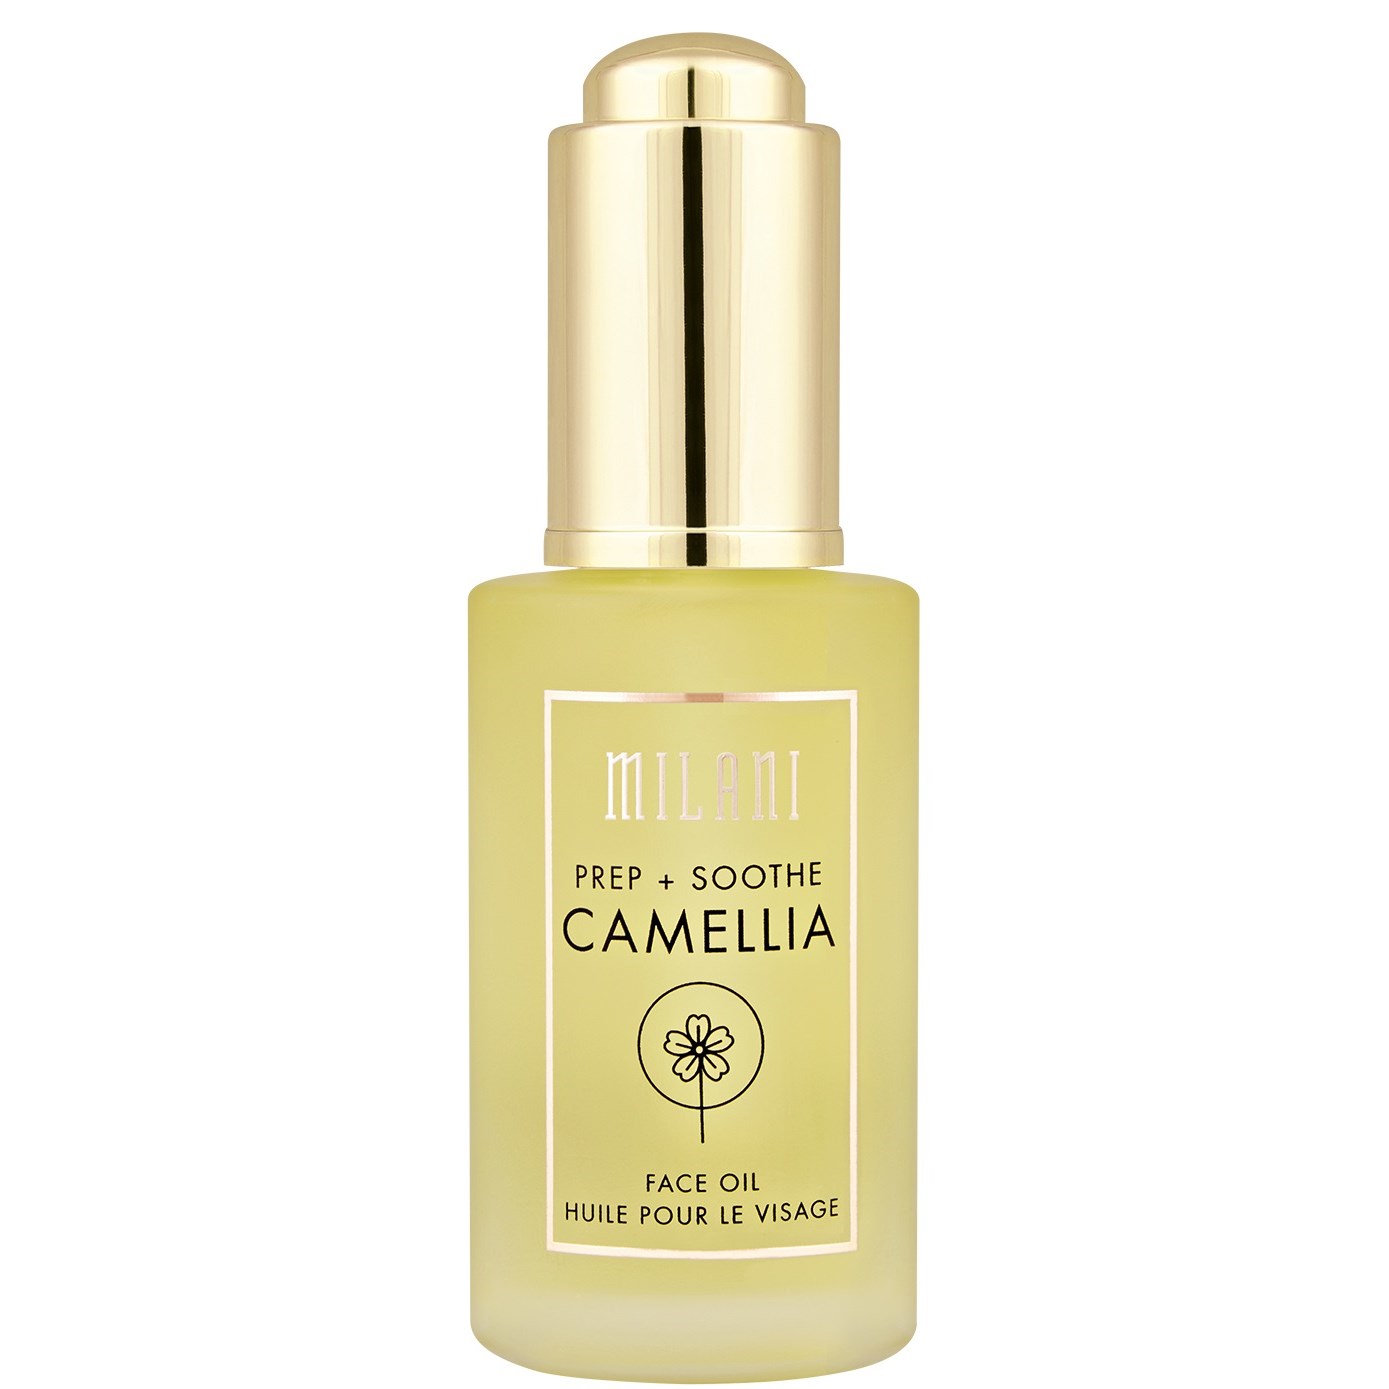 Milani Prep + Soothe Camellia Face Oil 30 ml